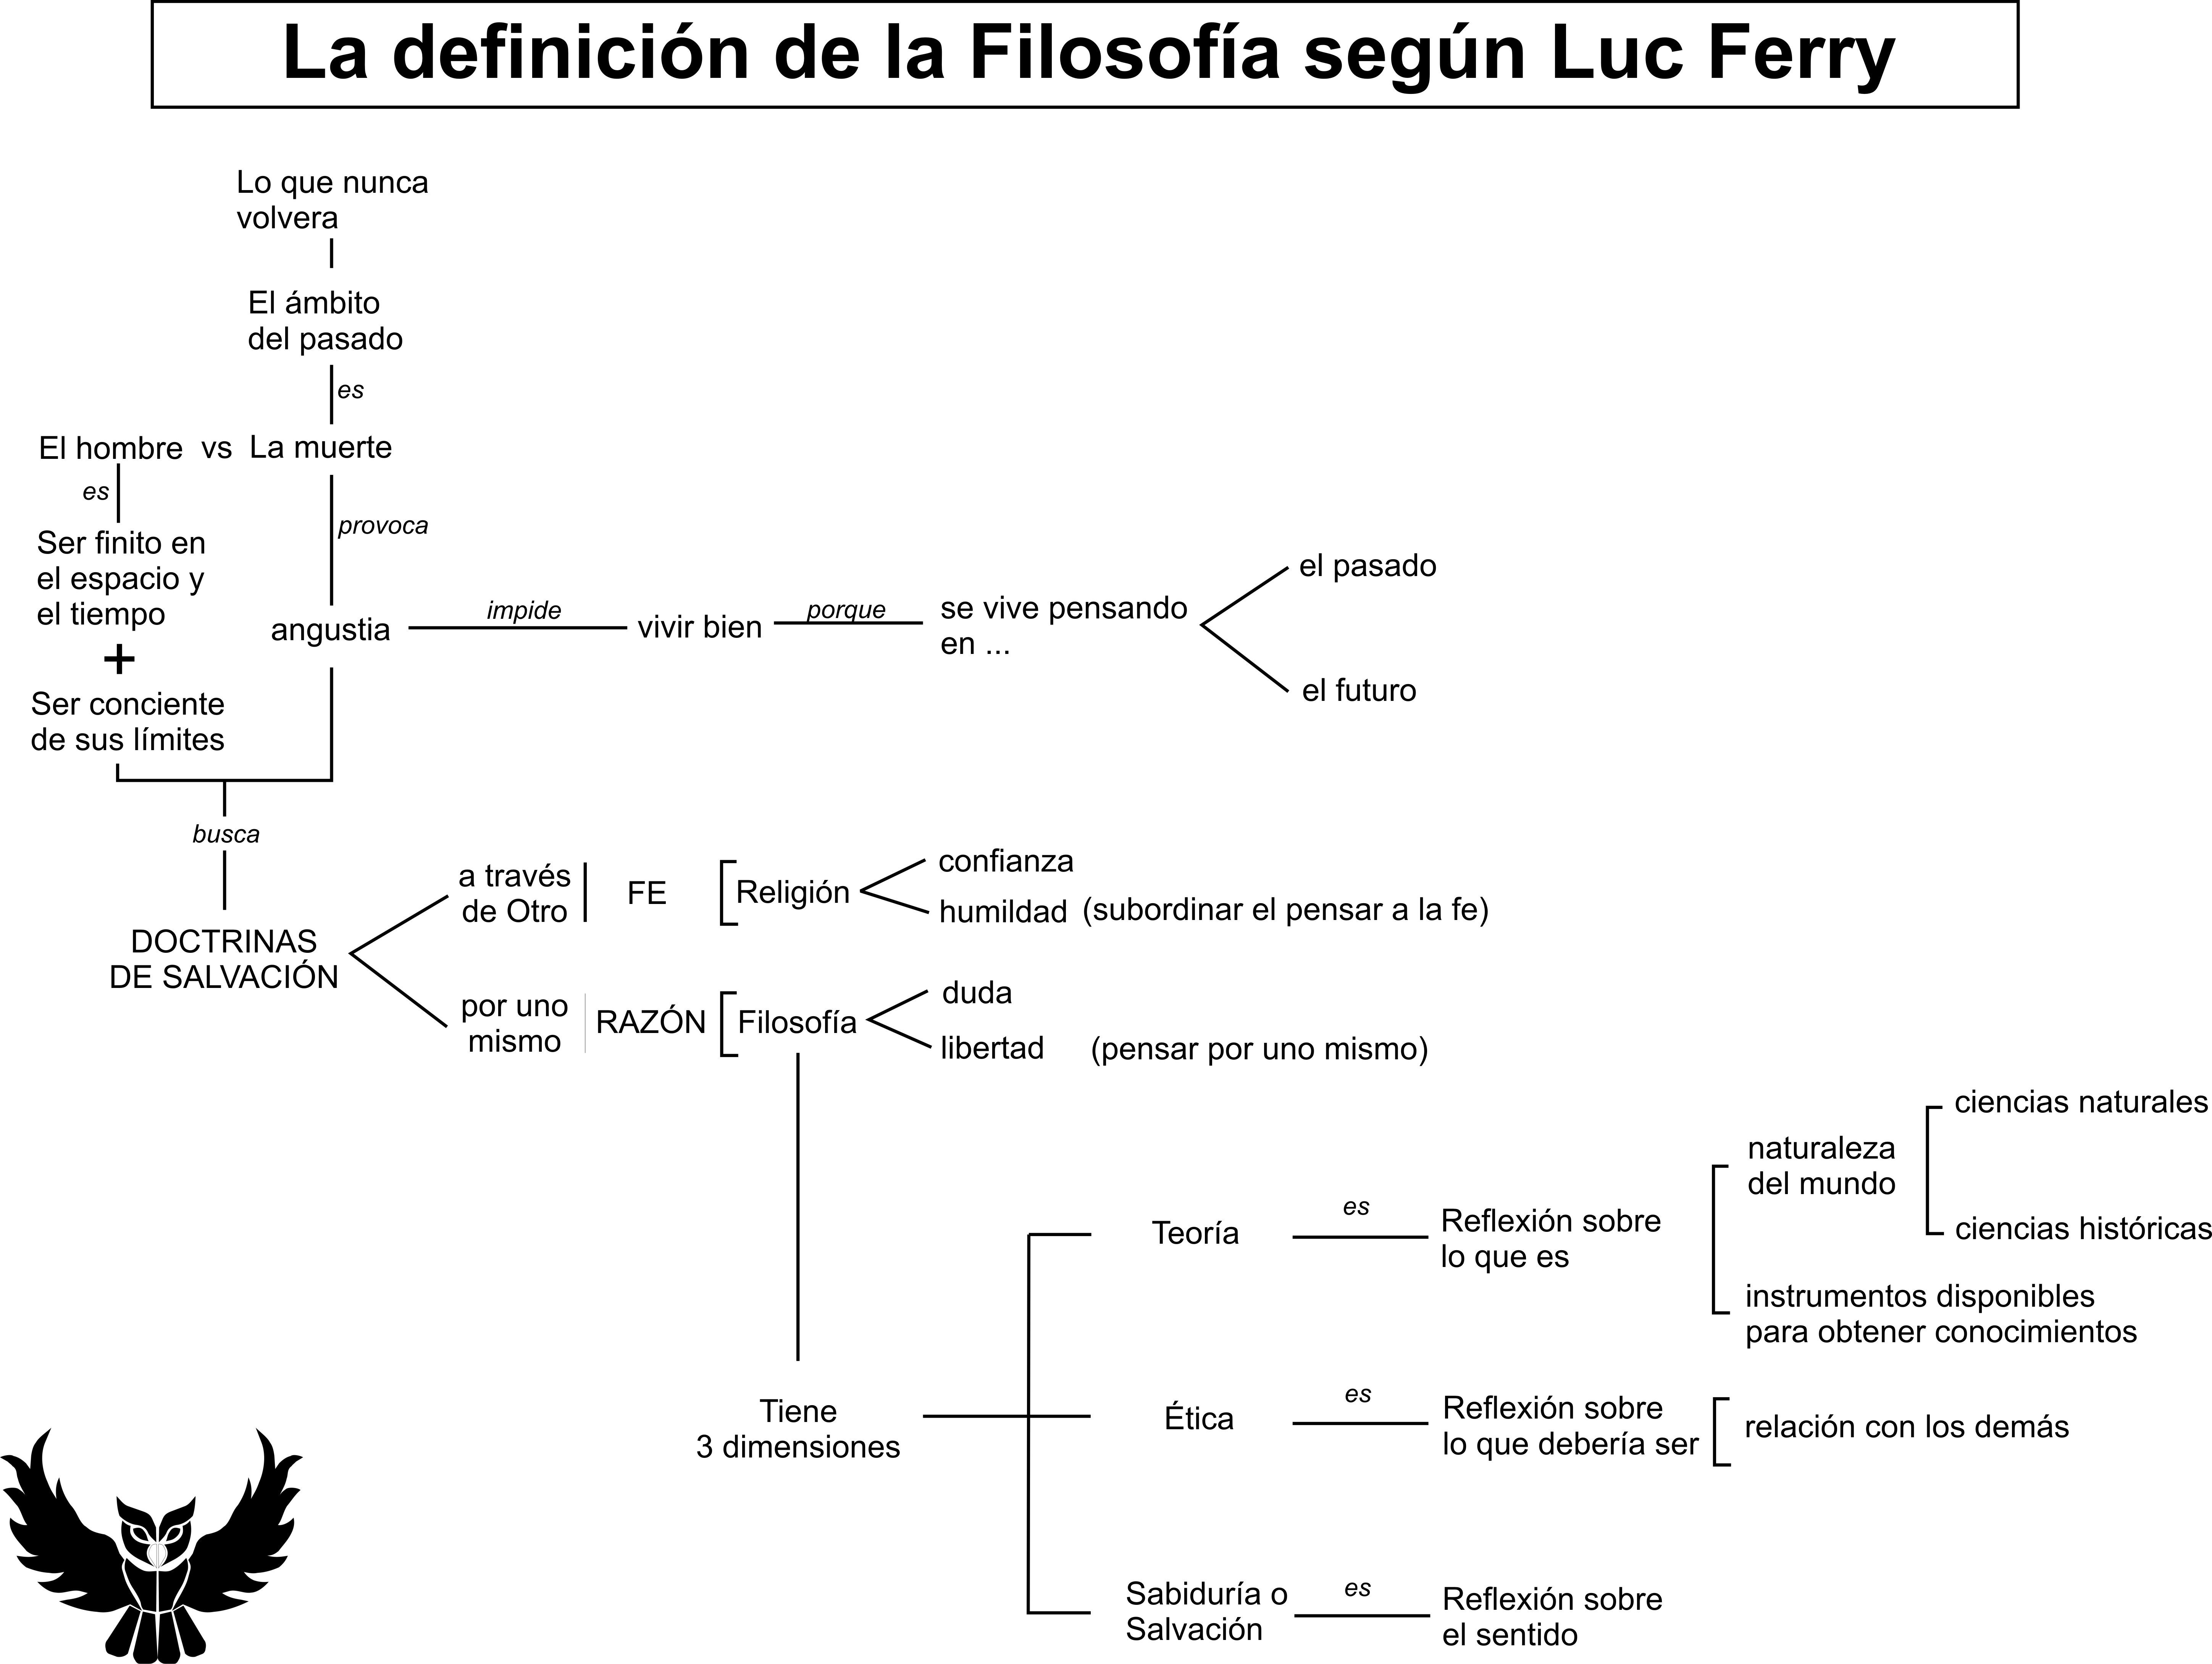 Definicion filosofia segun Luc Ferry